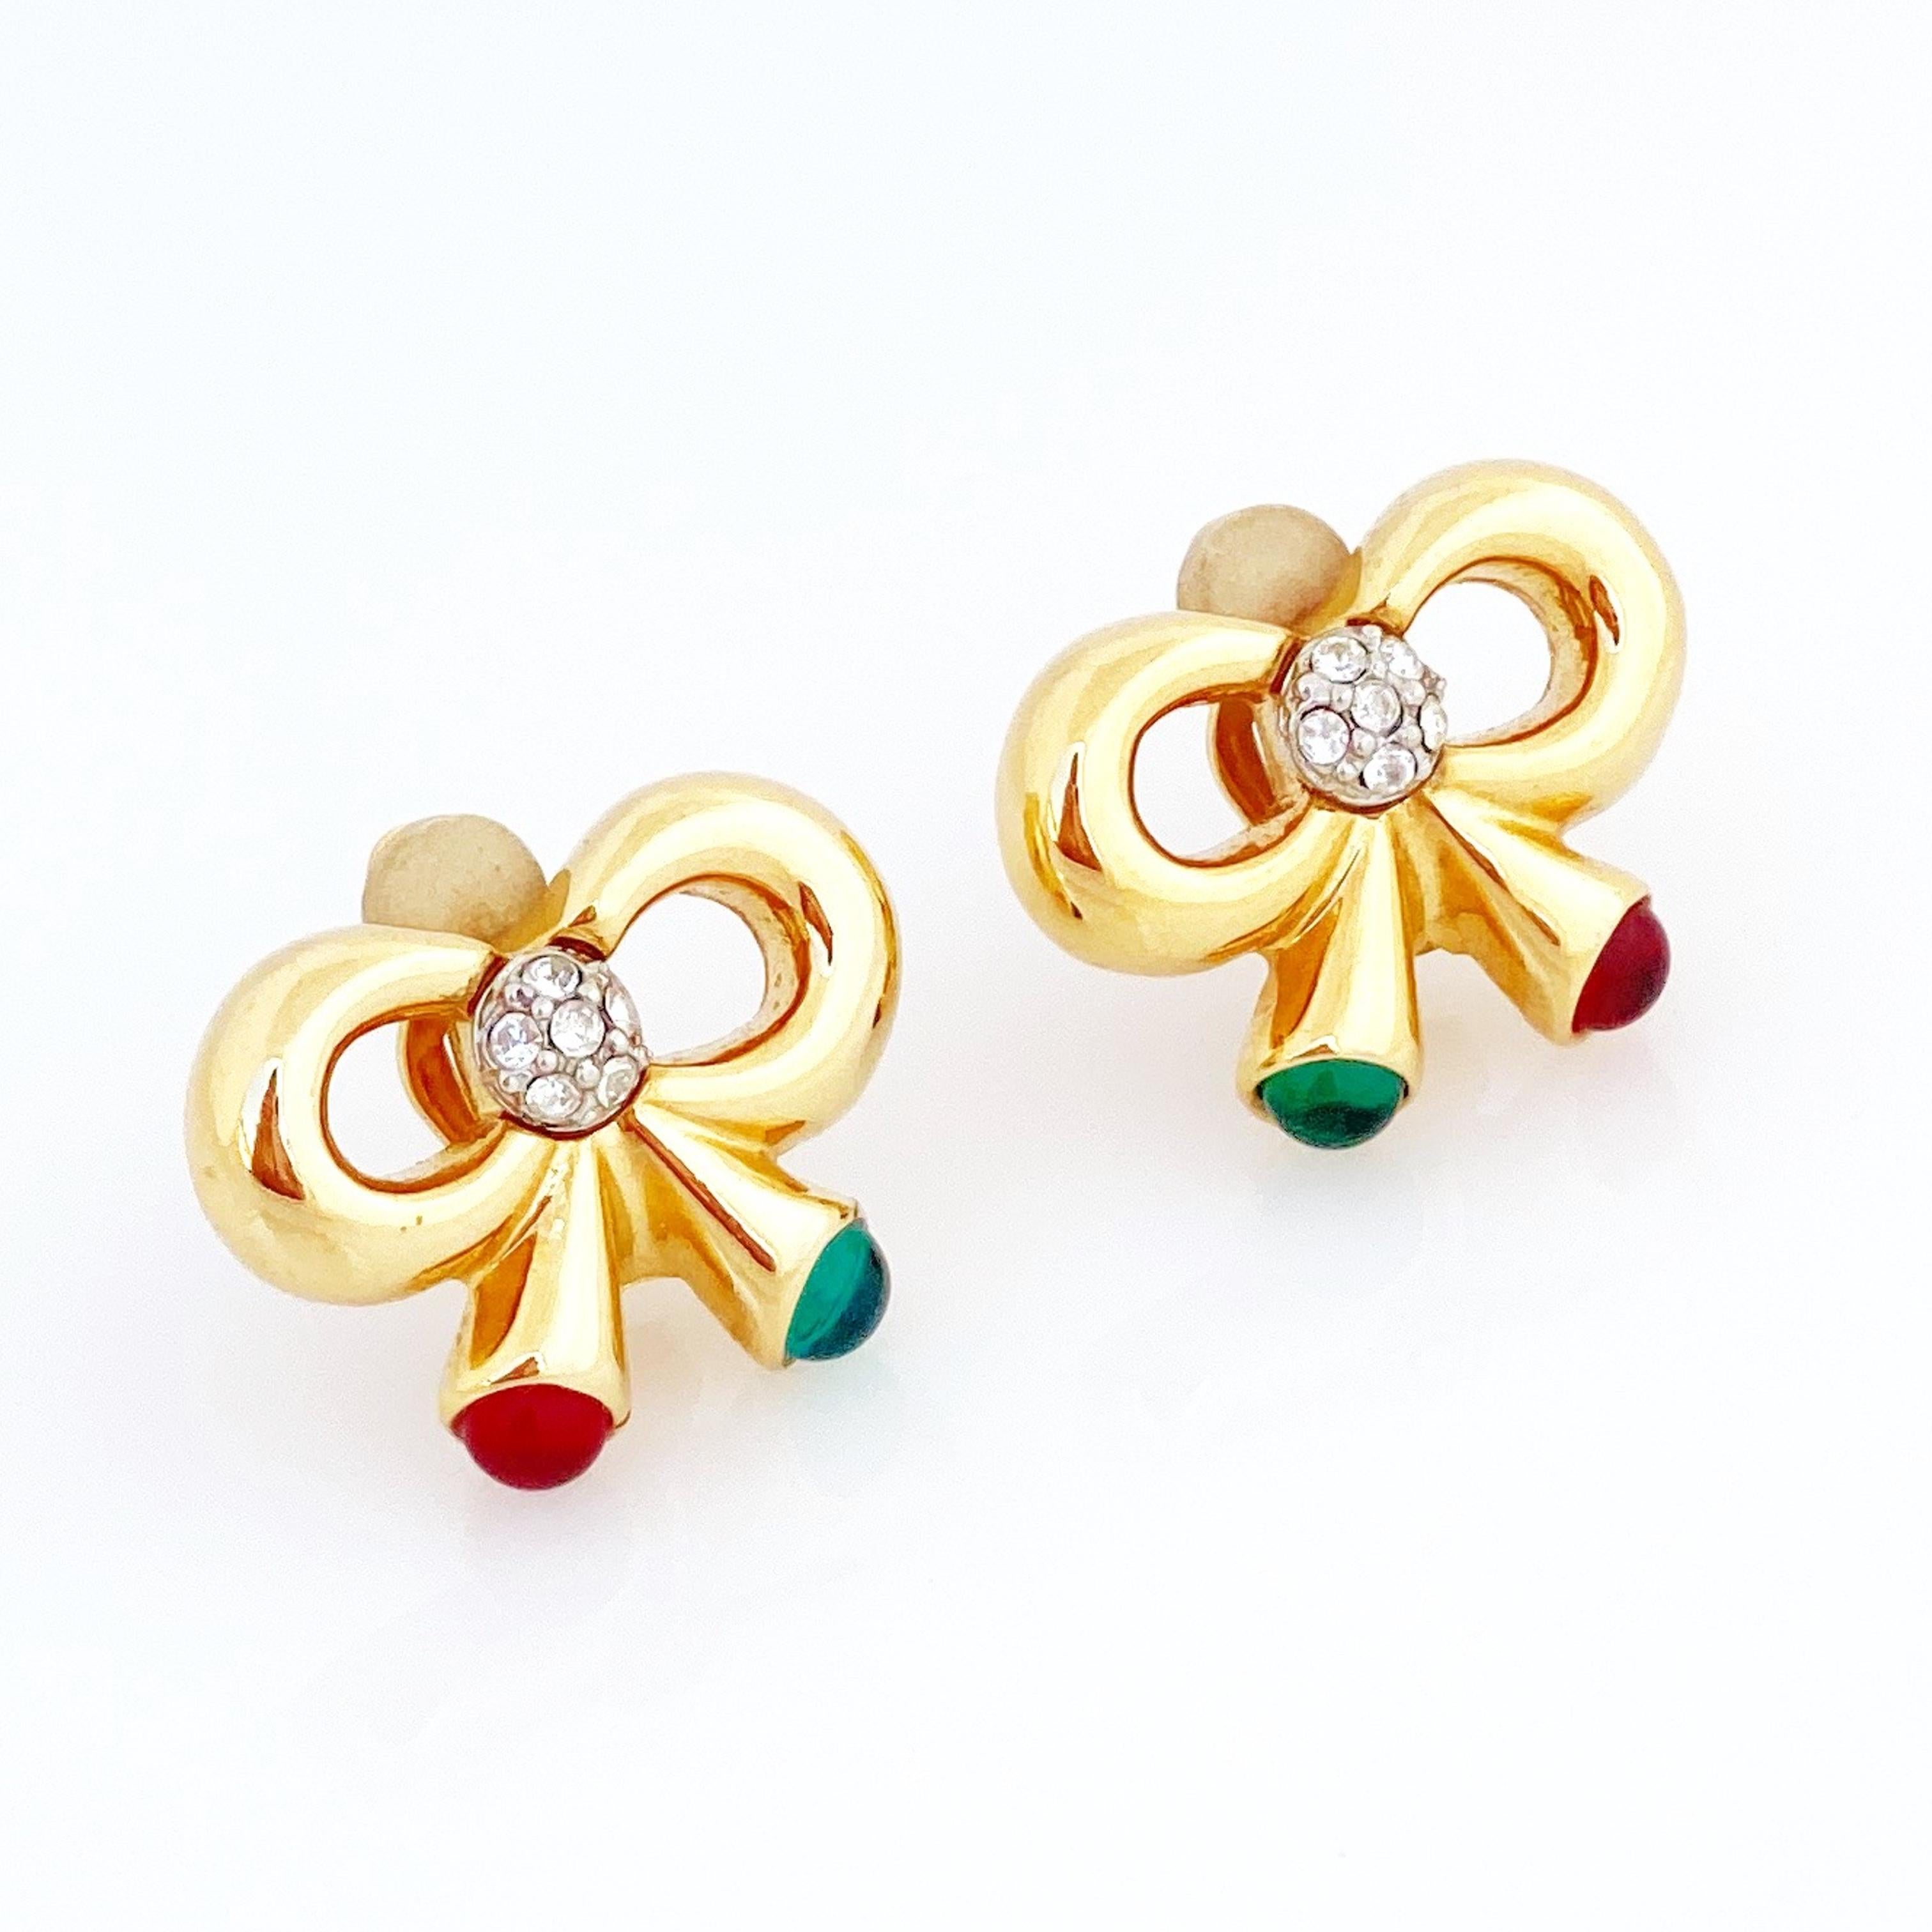 1990s earrings style